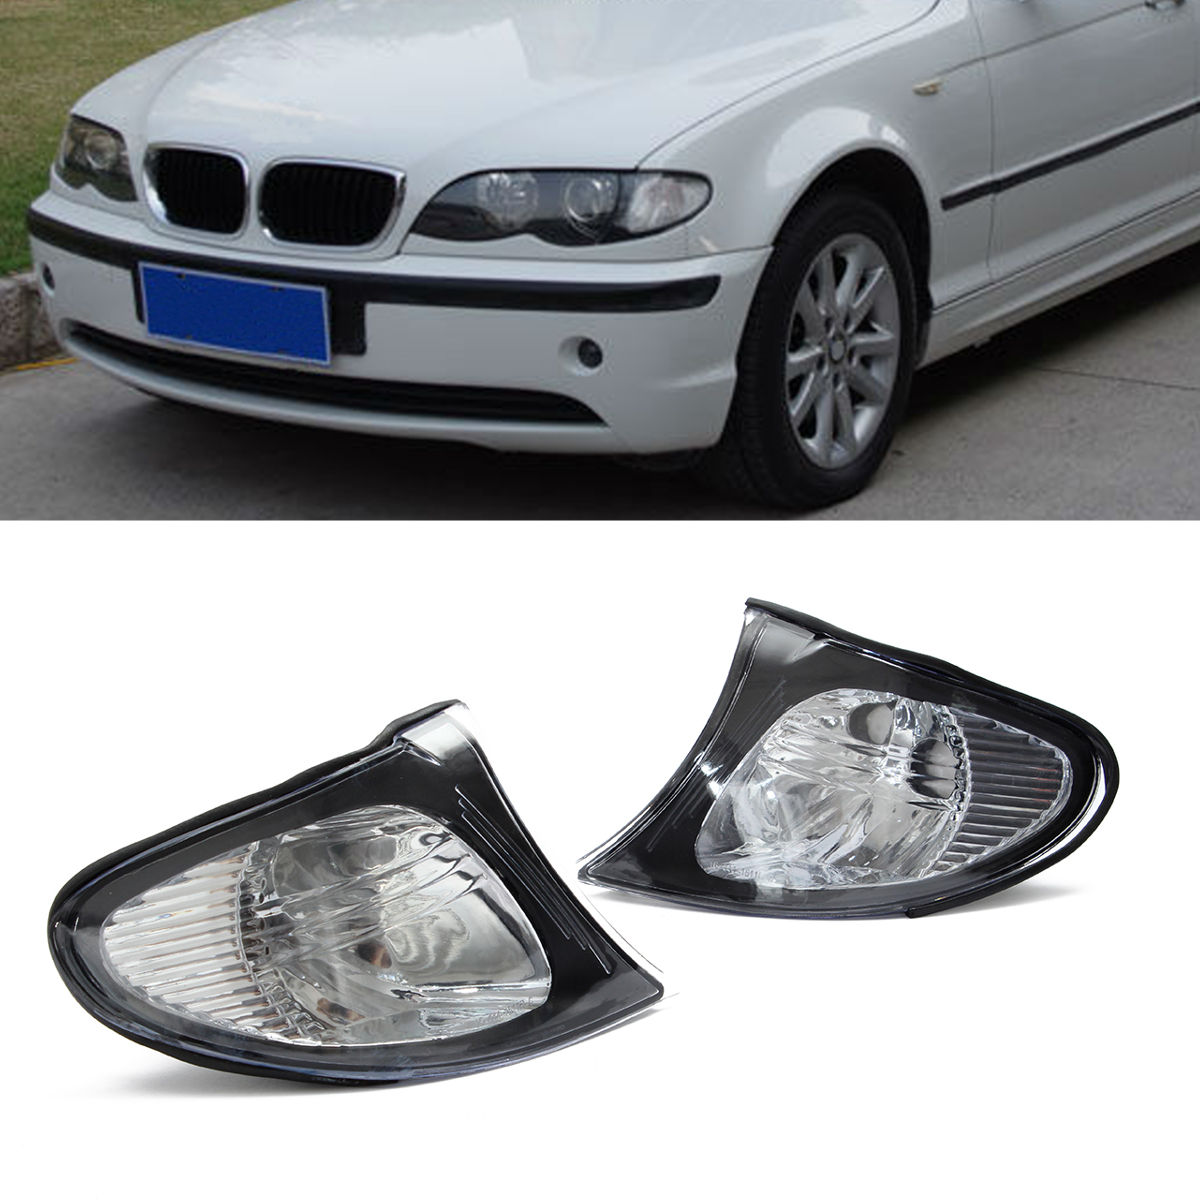 Luminaires latéraux en allure de coin pour BMW E46 3-Series 4DR 02-05 325i 330i Lens transparent